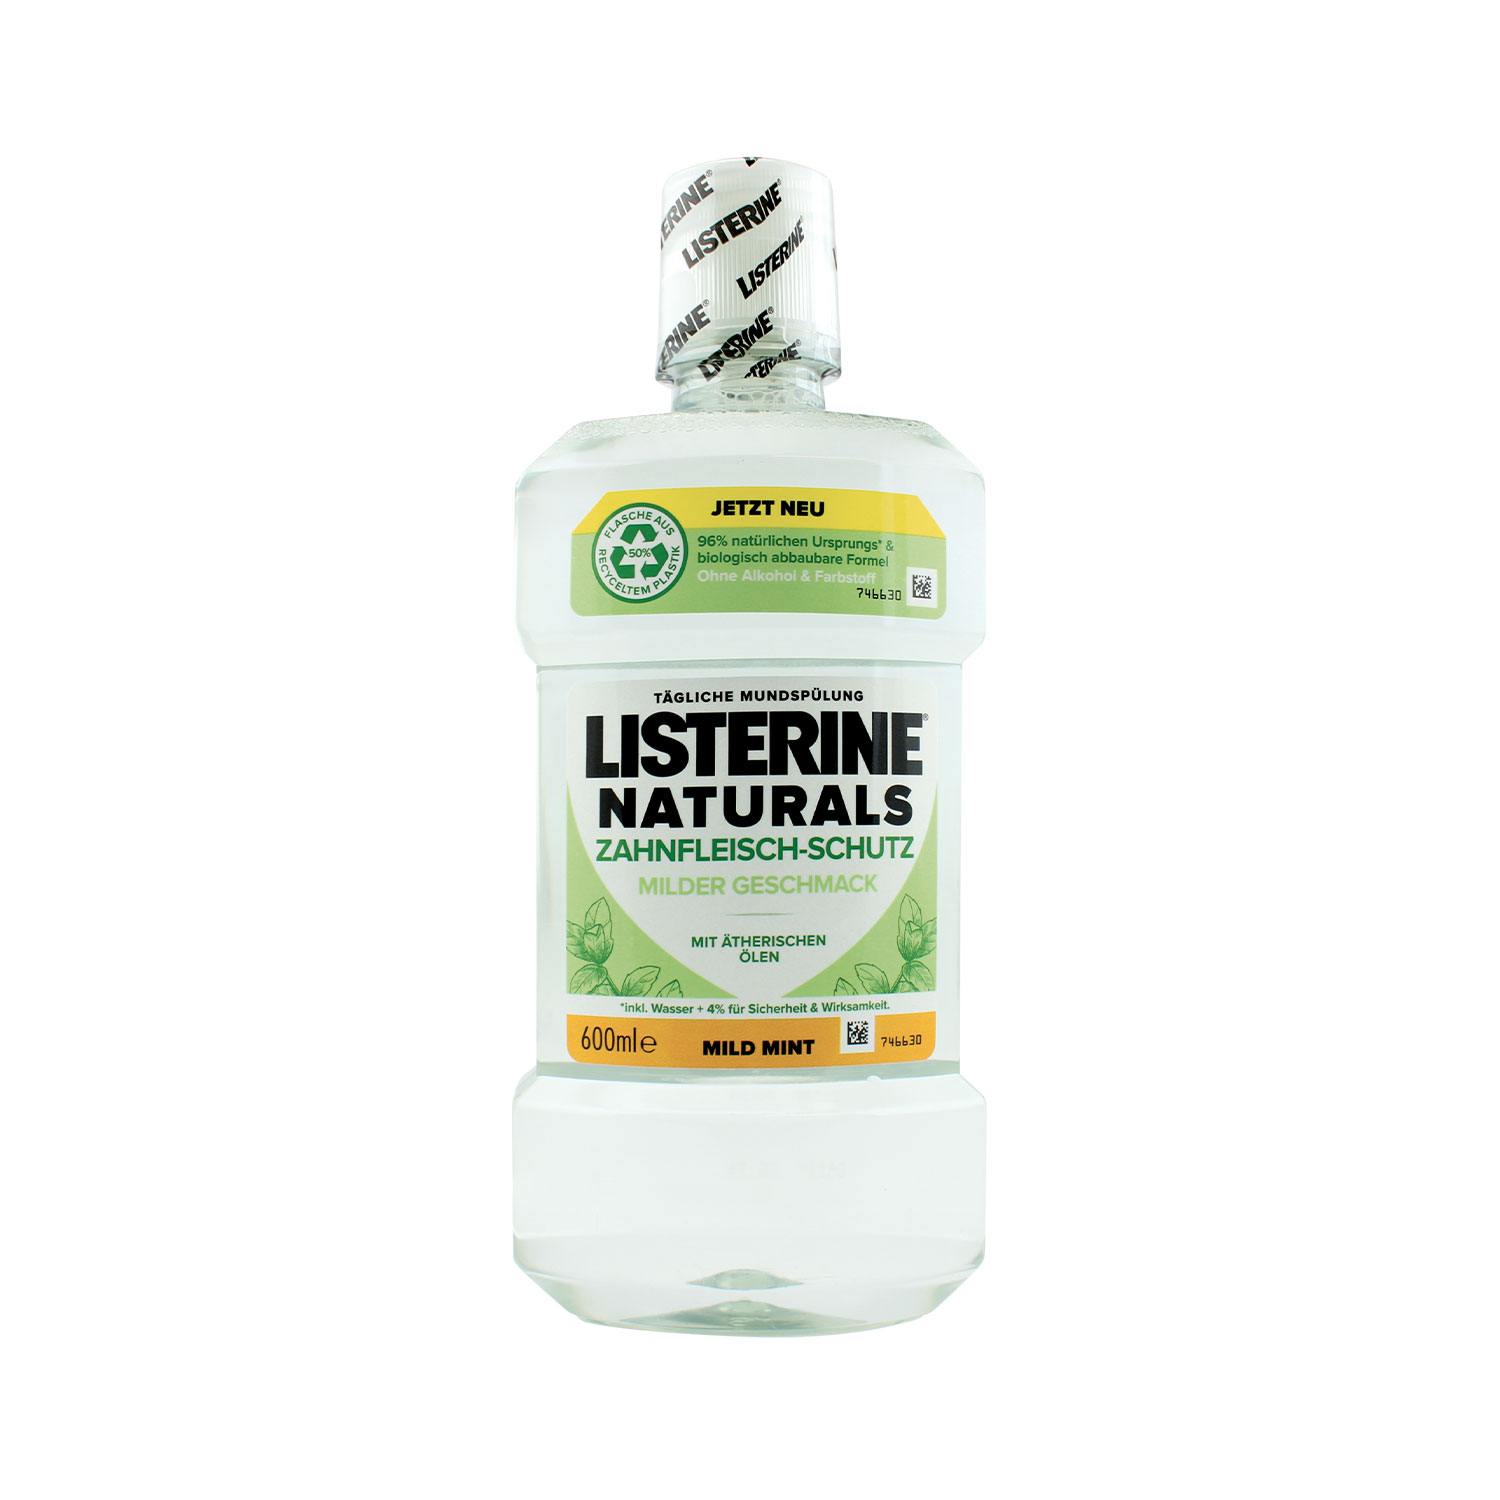 Listerine Naturals Mundspülung XL-Flasche Zahnfleisch-Schutz 600 ml